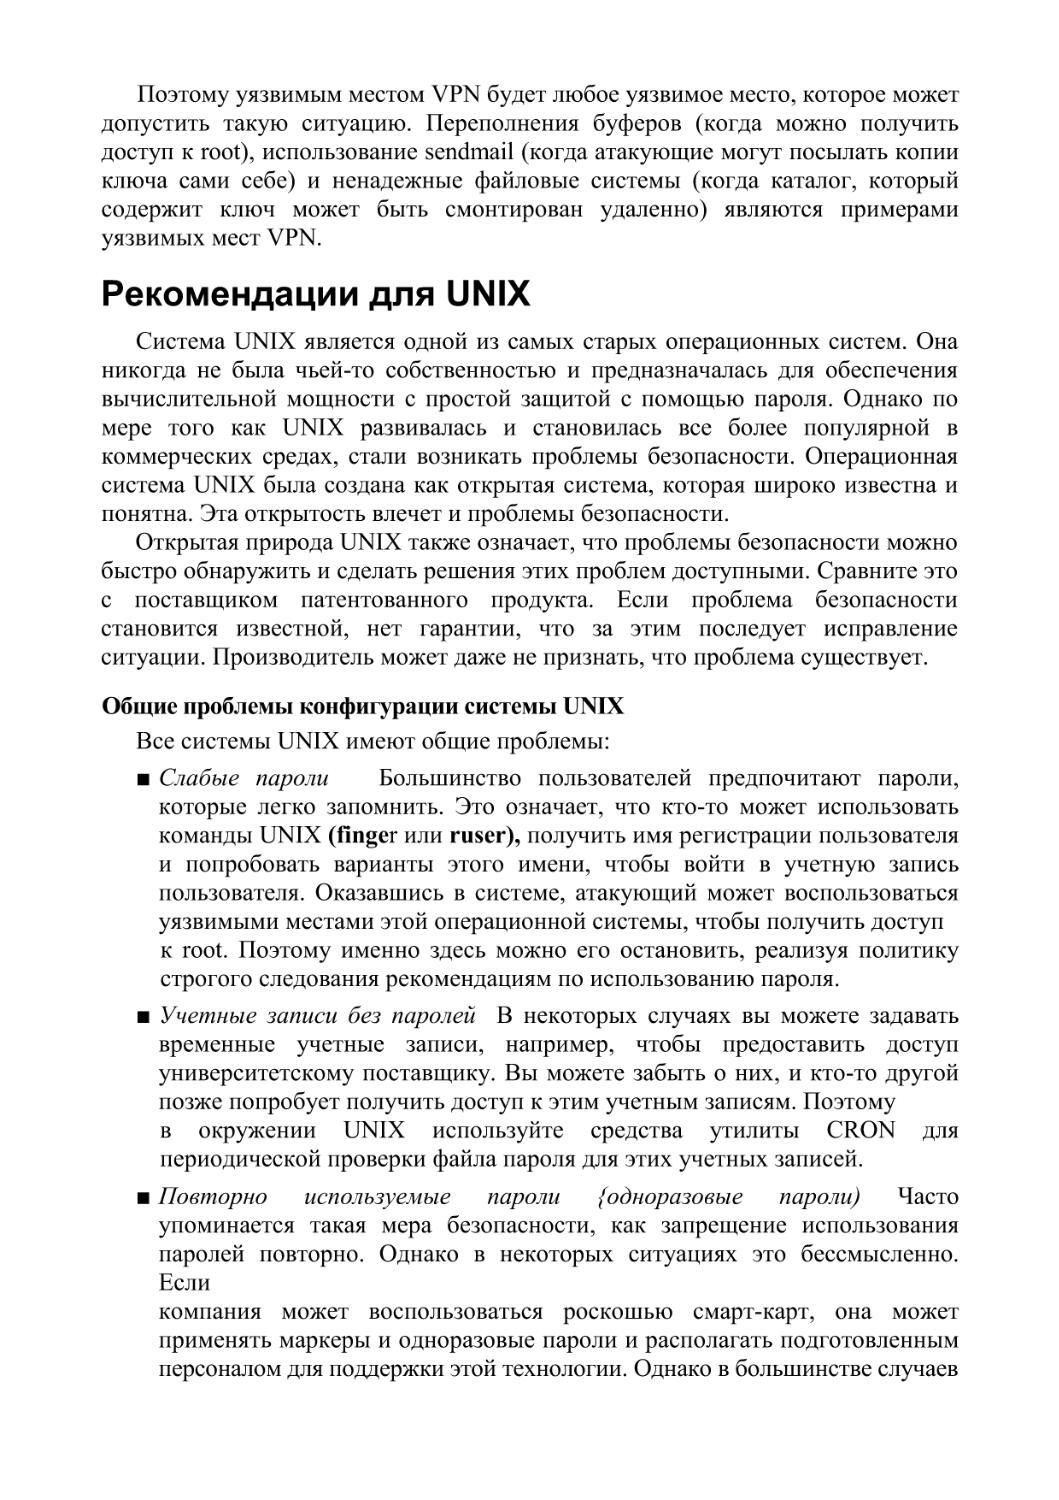 Рекомендации для UNIX